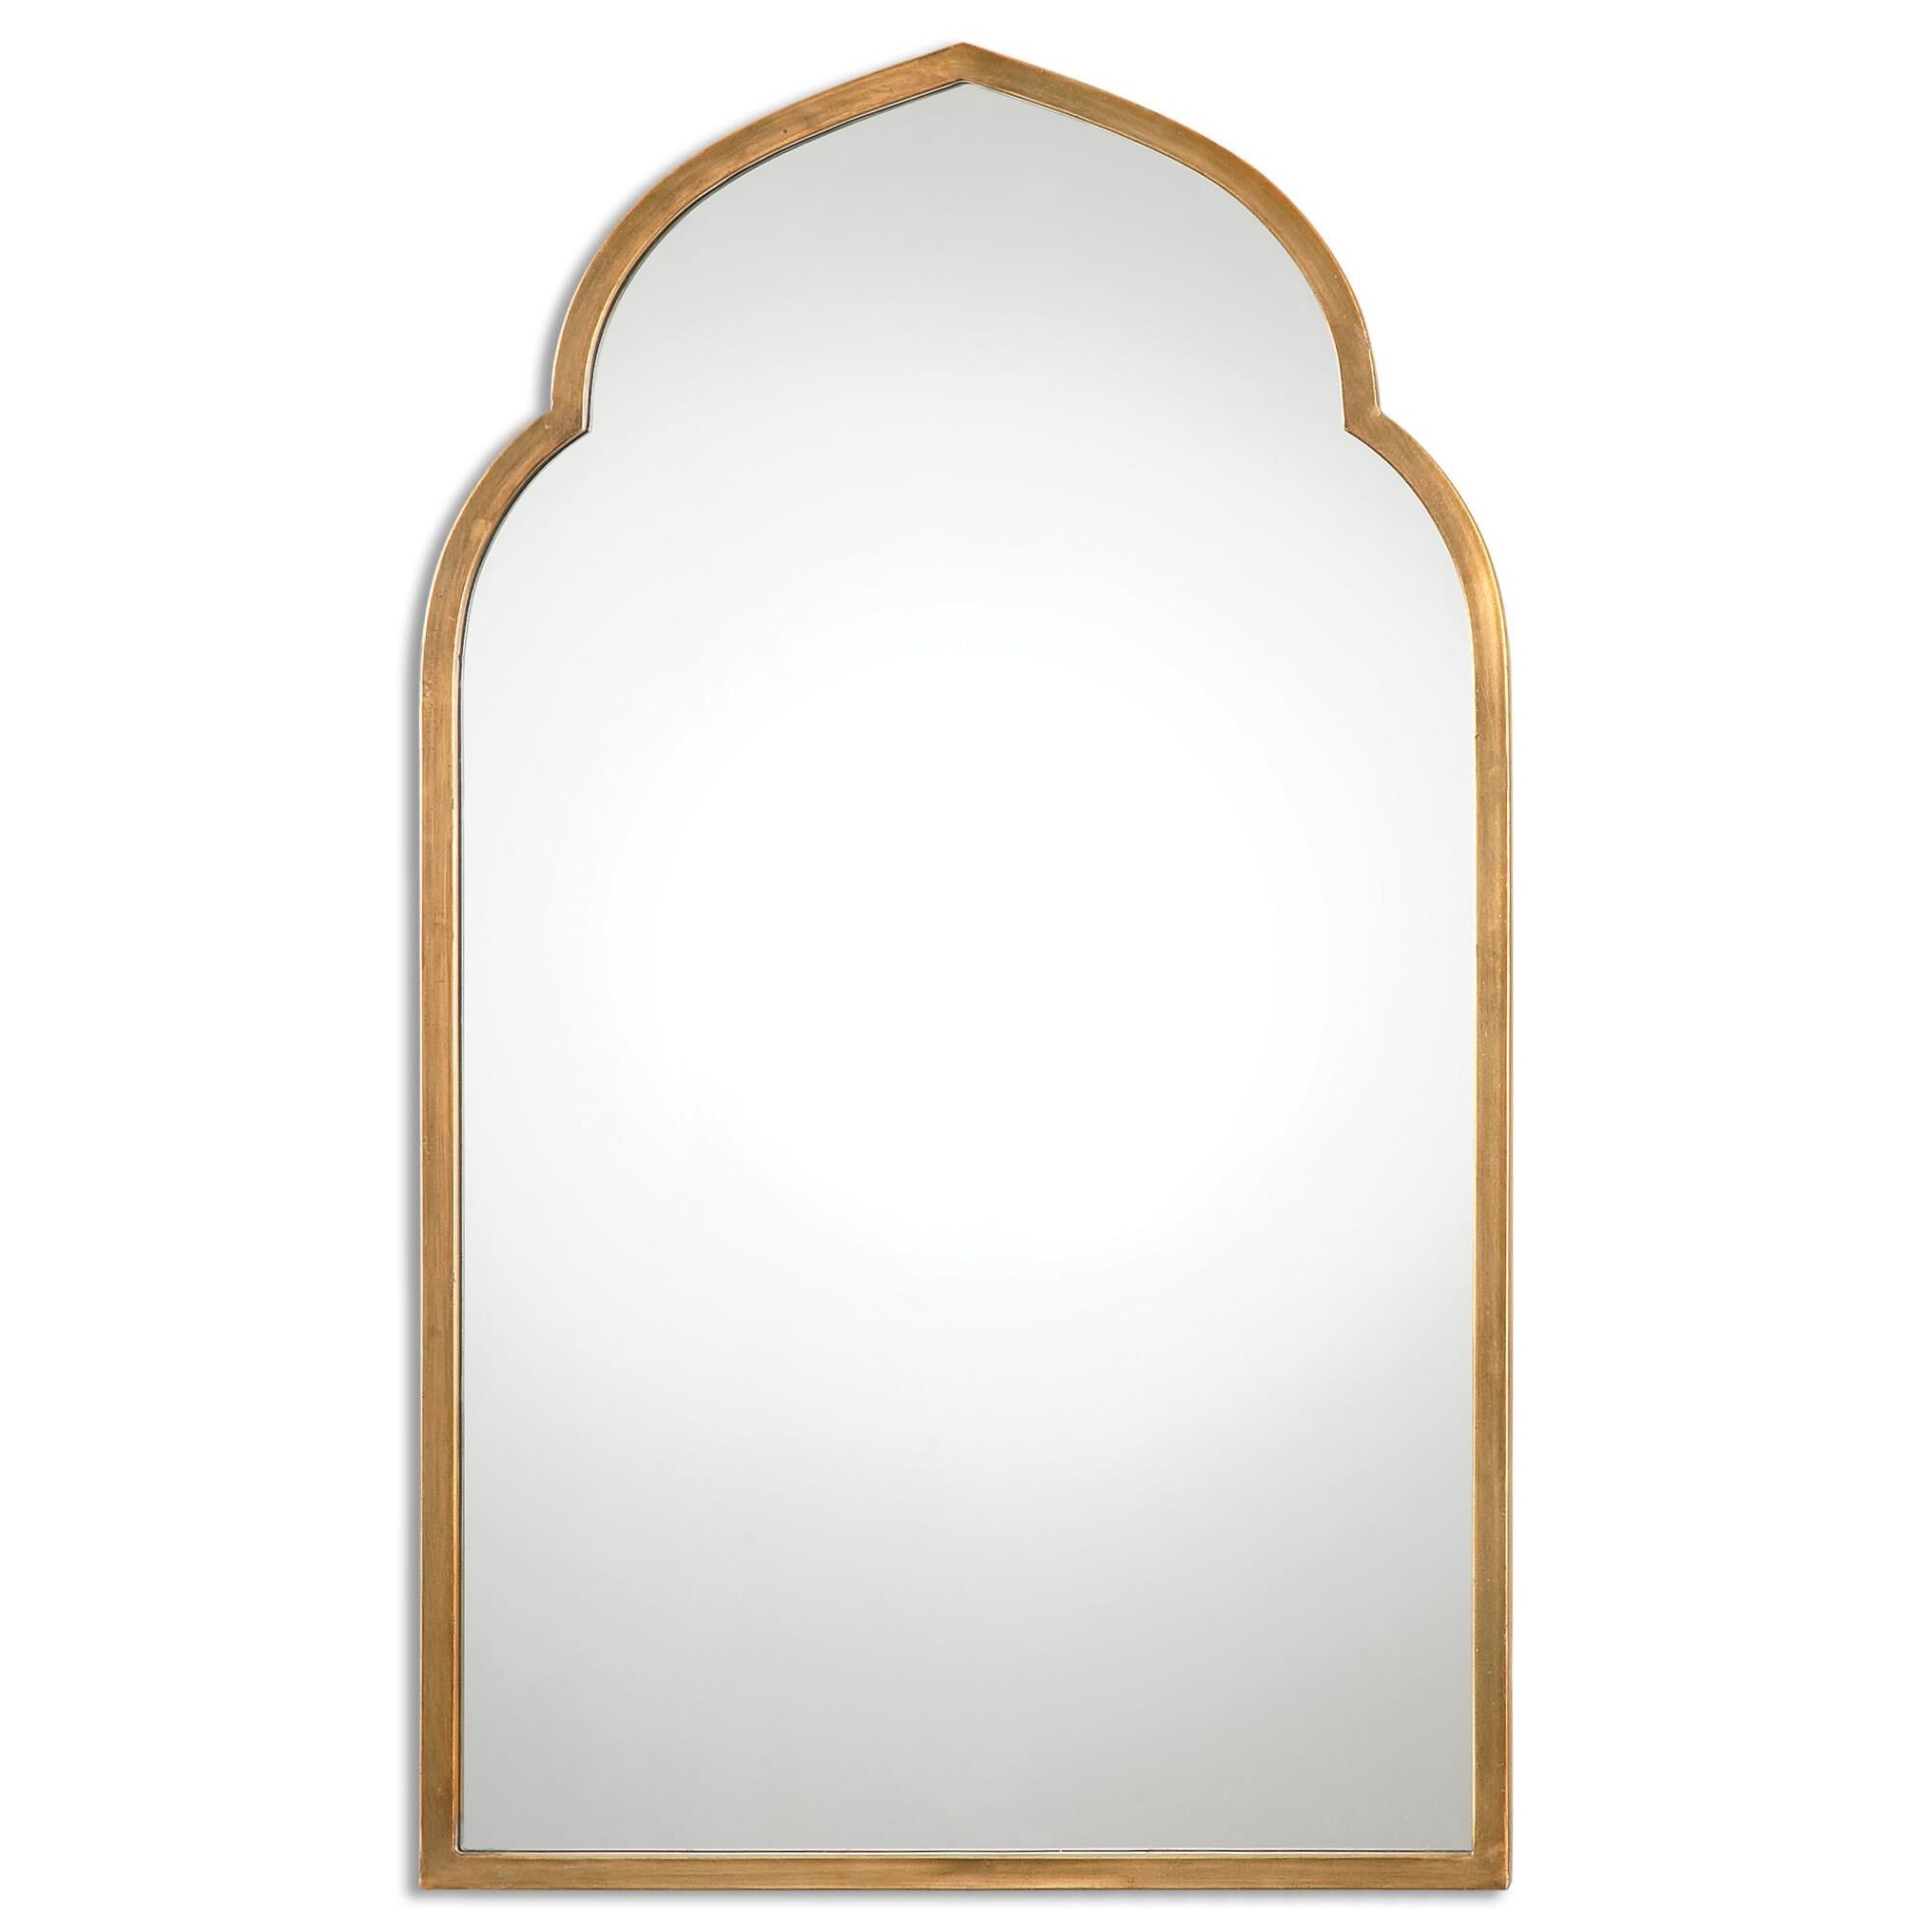 Kenitra Wall Mirror by Uttermost | Capitol Lighting 1800lighting.com